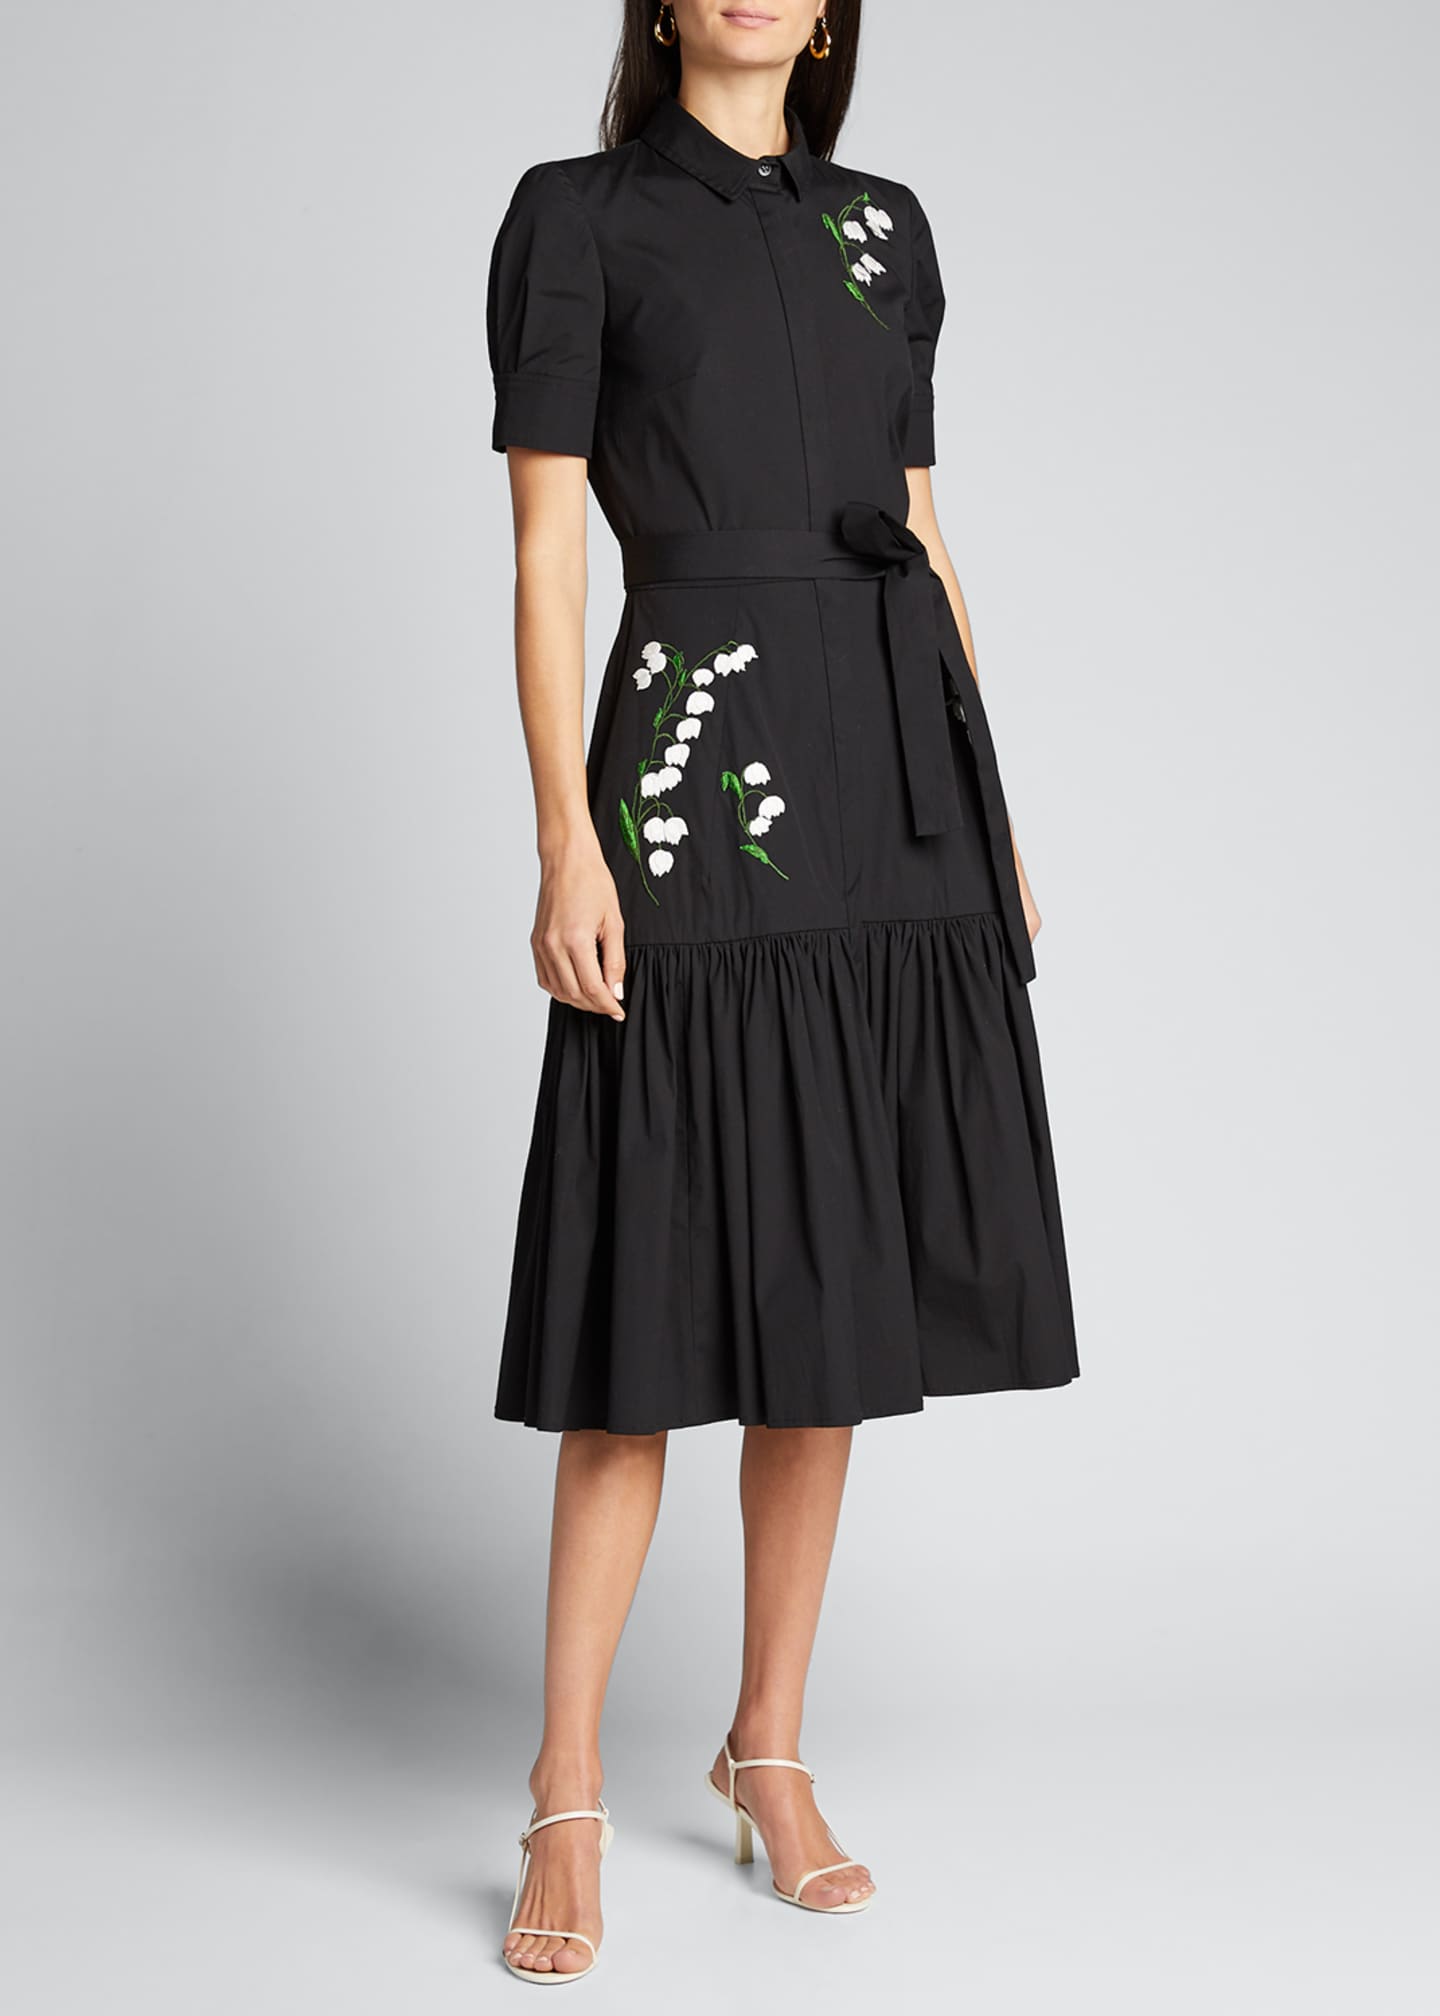 Carolina Herrera Embroidered Tie-Waist Shirtdress - Bergdorf Goodman